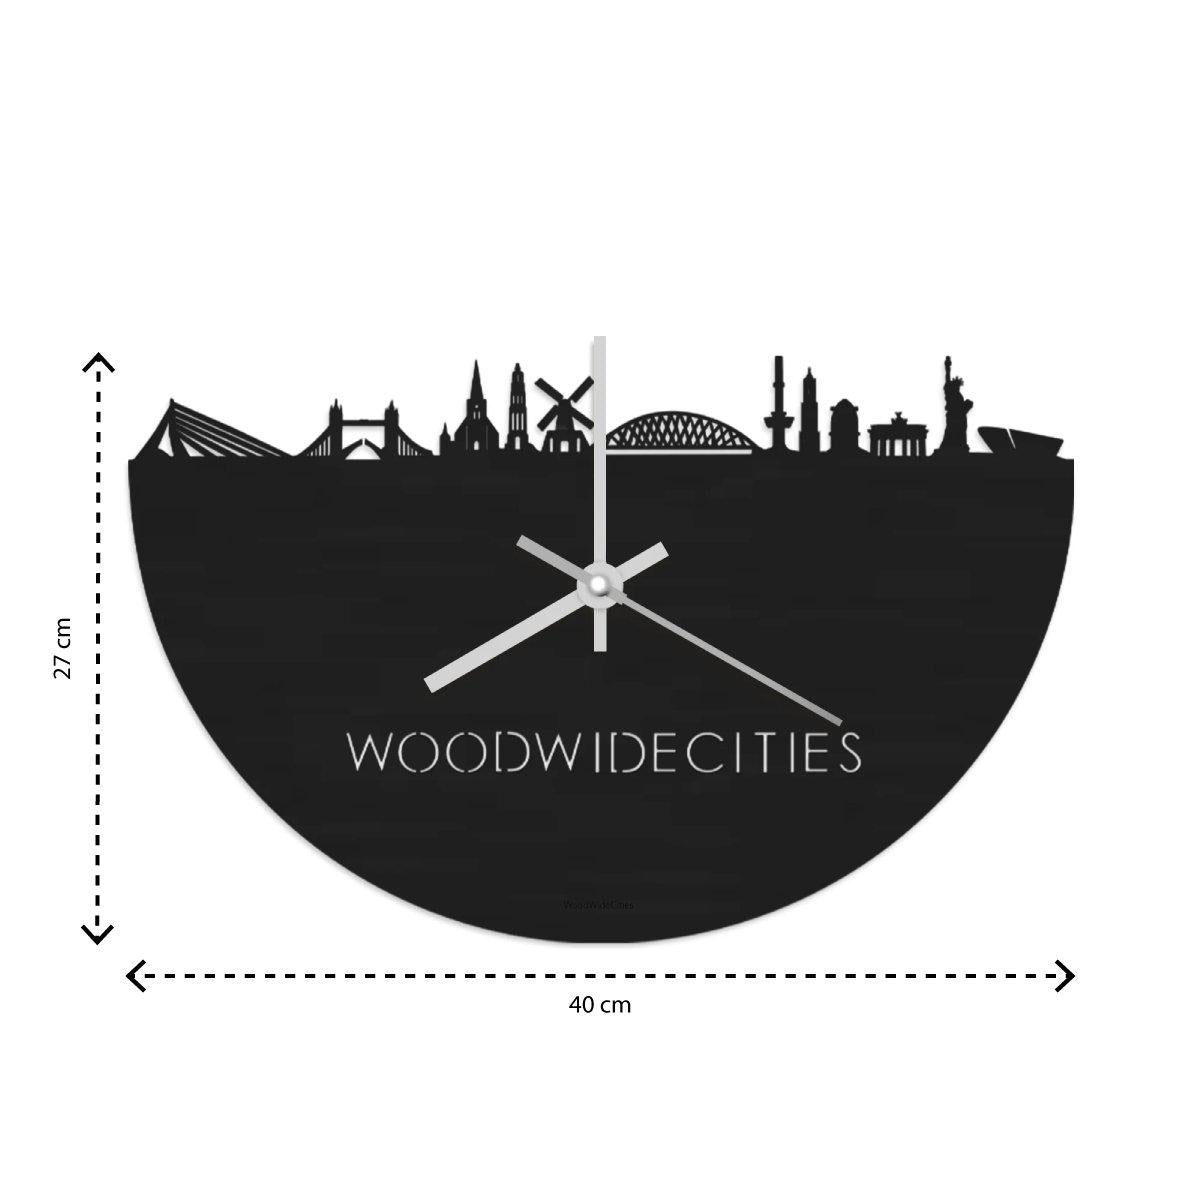 Skyline Klok Uden Wit glanzend gerecycled kunststof cadeau decoratie relatiegeschenk van WoodWideCities